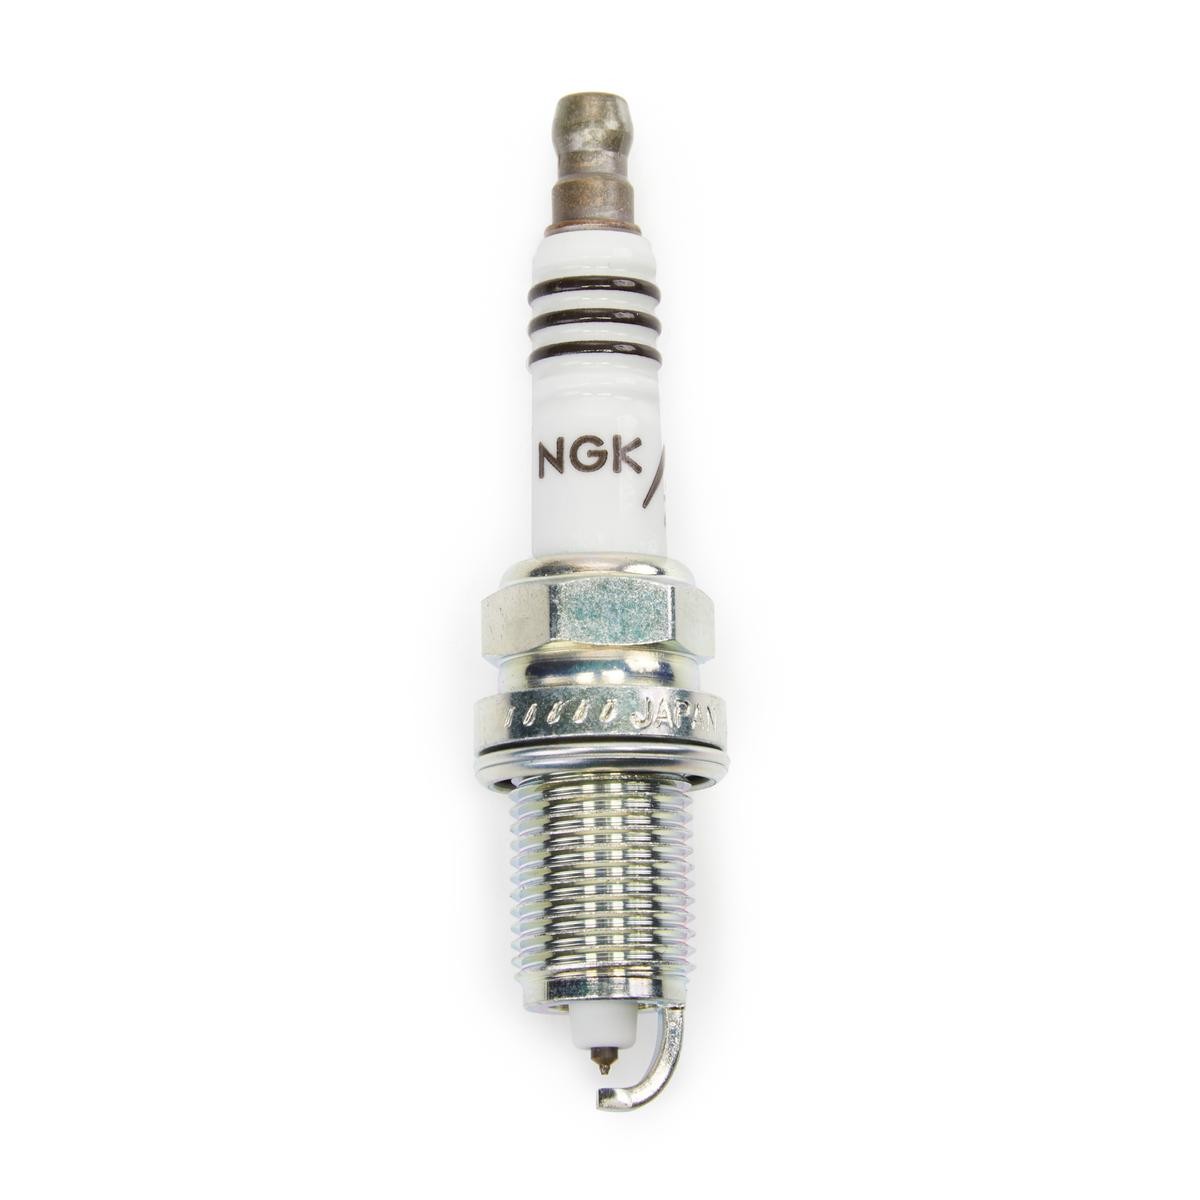 NGK Spark plug iridium and platinum Fabia II Combi (545) new 6441